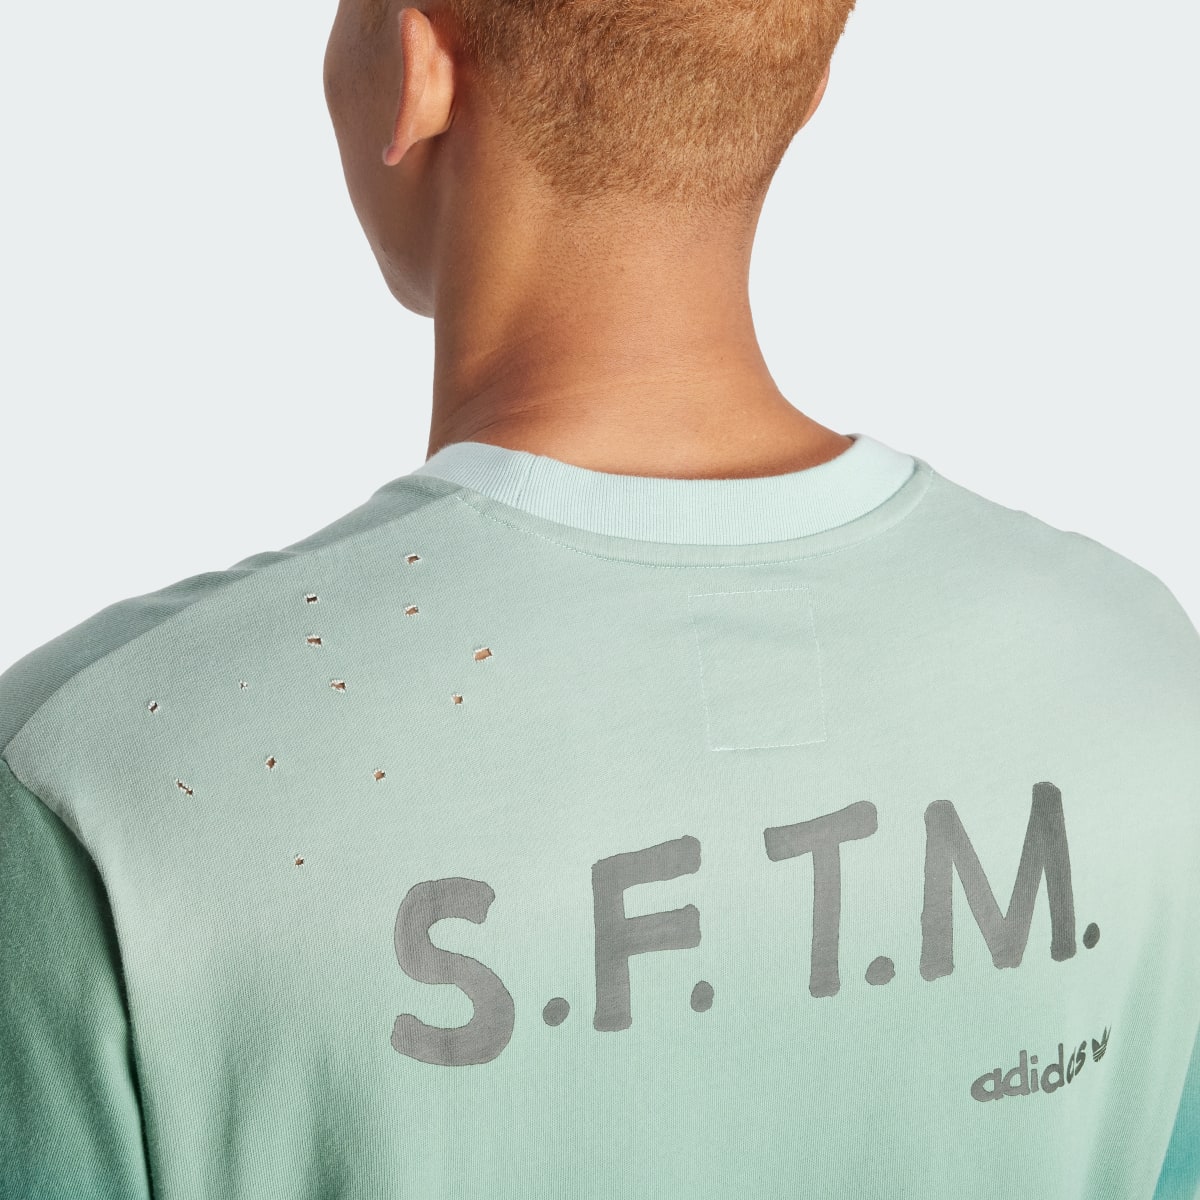 Adidas Camiseta manga corta SFTM (Género neutro). 7